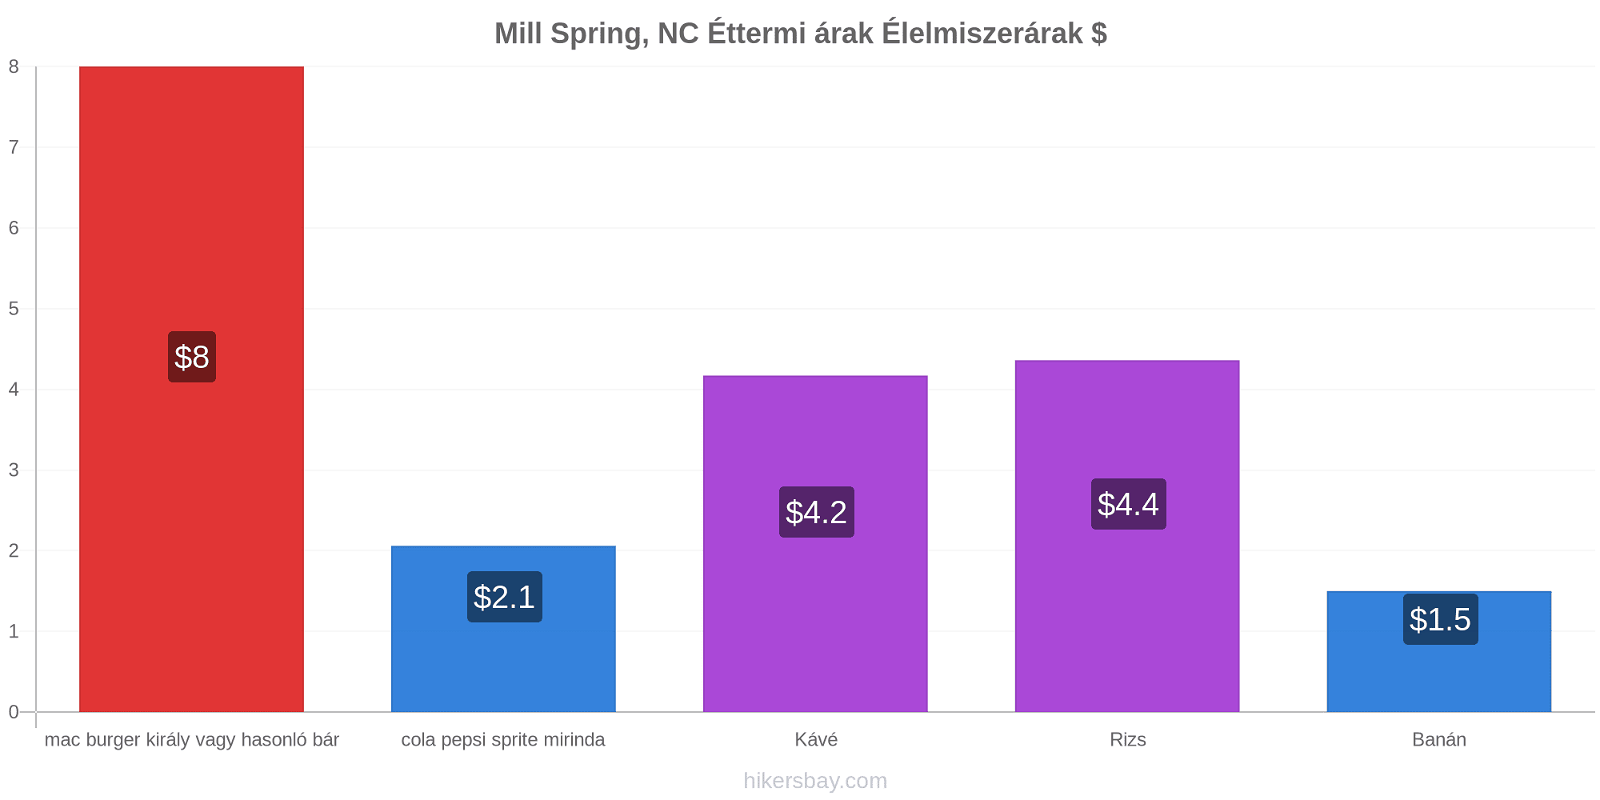 Mill Spring, NC ár változások hikersbay.com